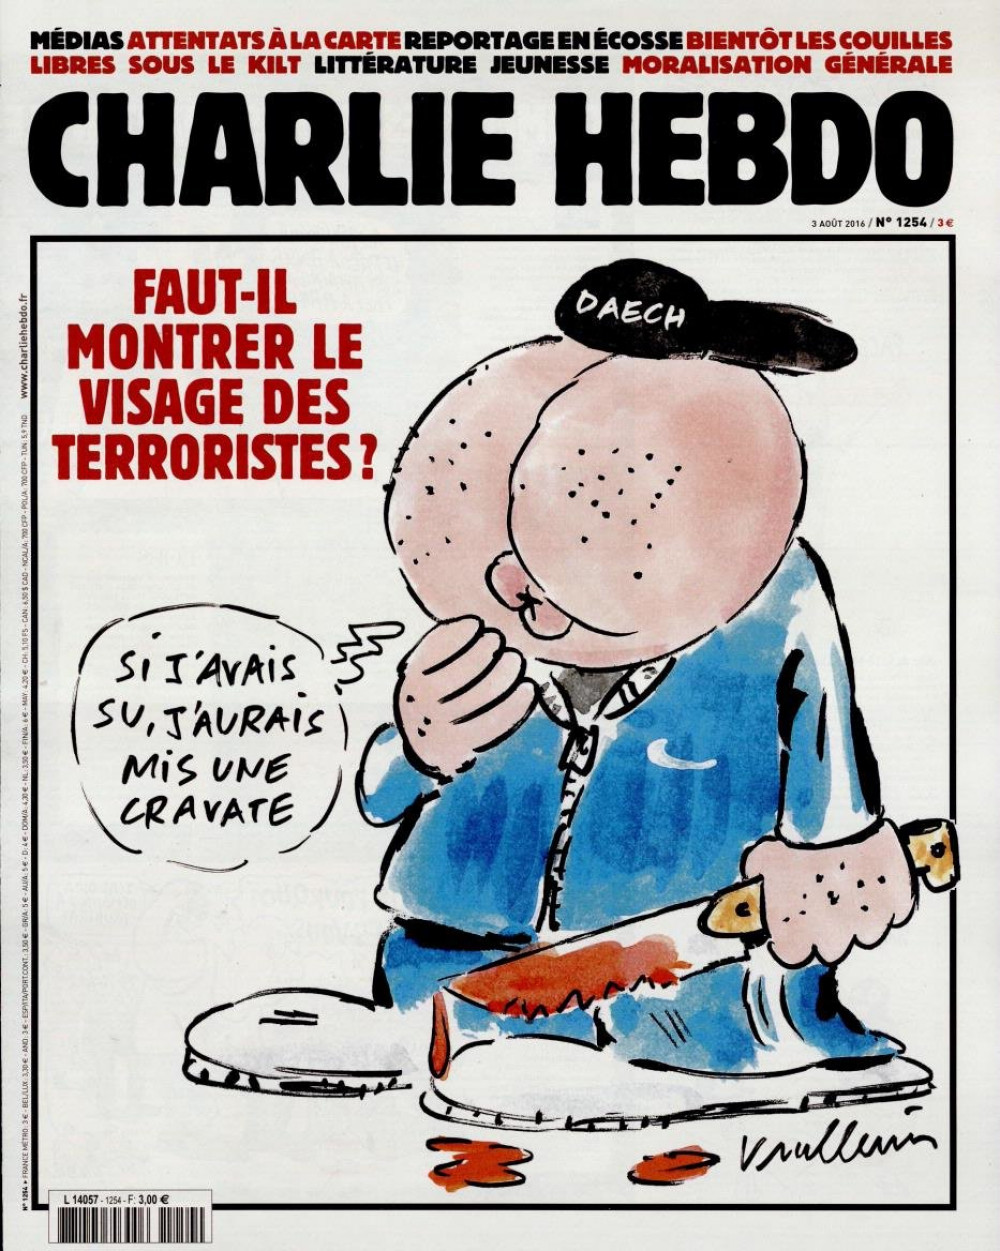 La Nouvelle Une De Charlie Hebdo Tabasse Et On Adore